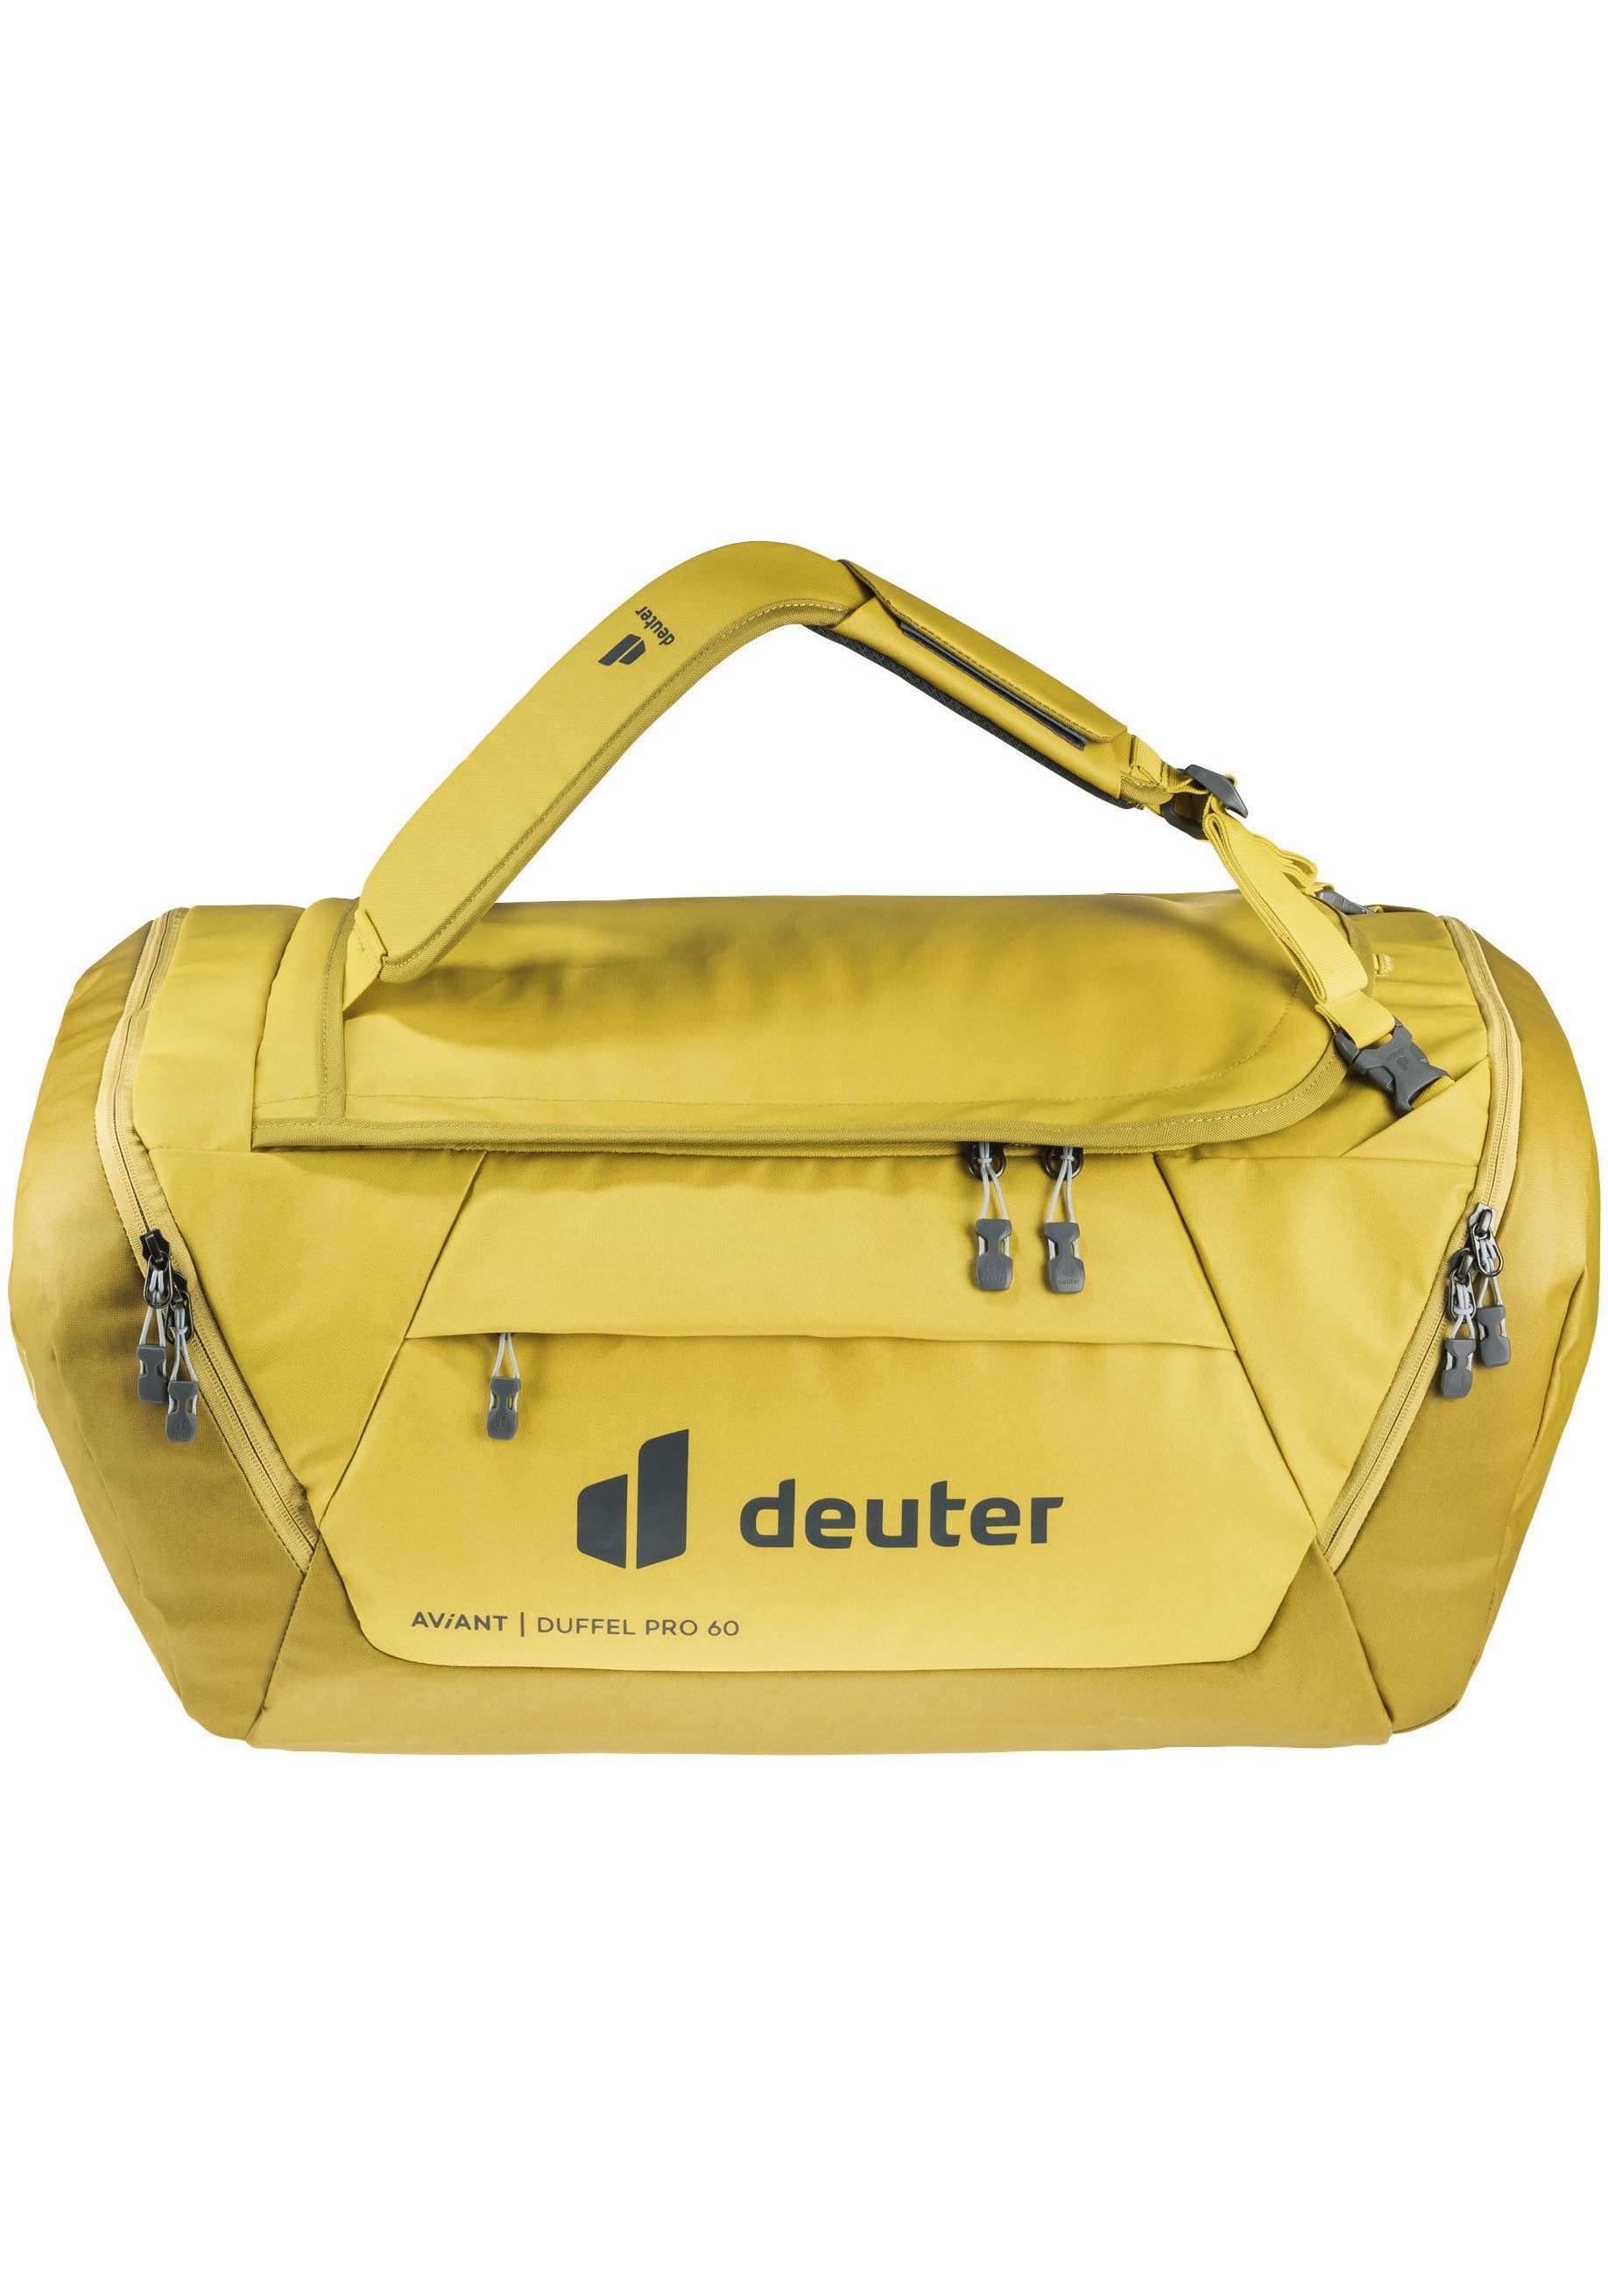 deuter Reisetasche AViANT Duffel Pro 60, Kompression innen für Kleidung gelb